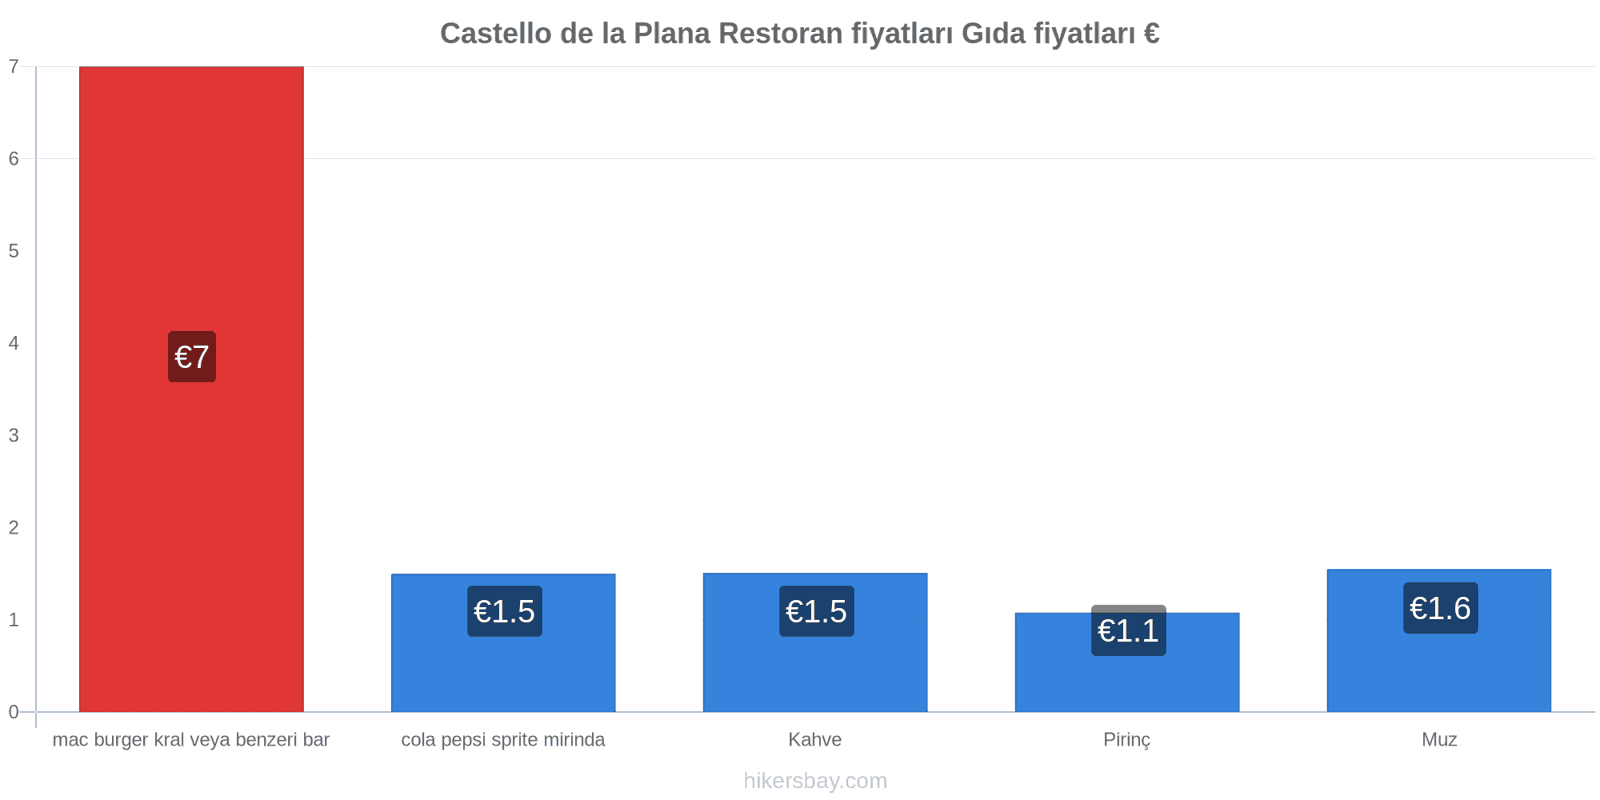 Castello de la Plana fiyat değişiklikleri hikersbay.com